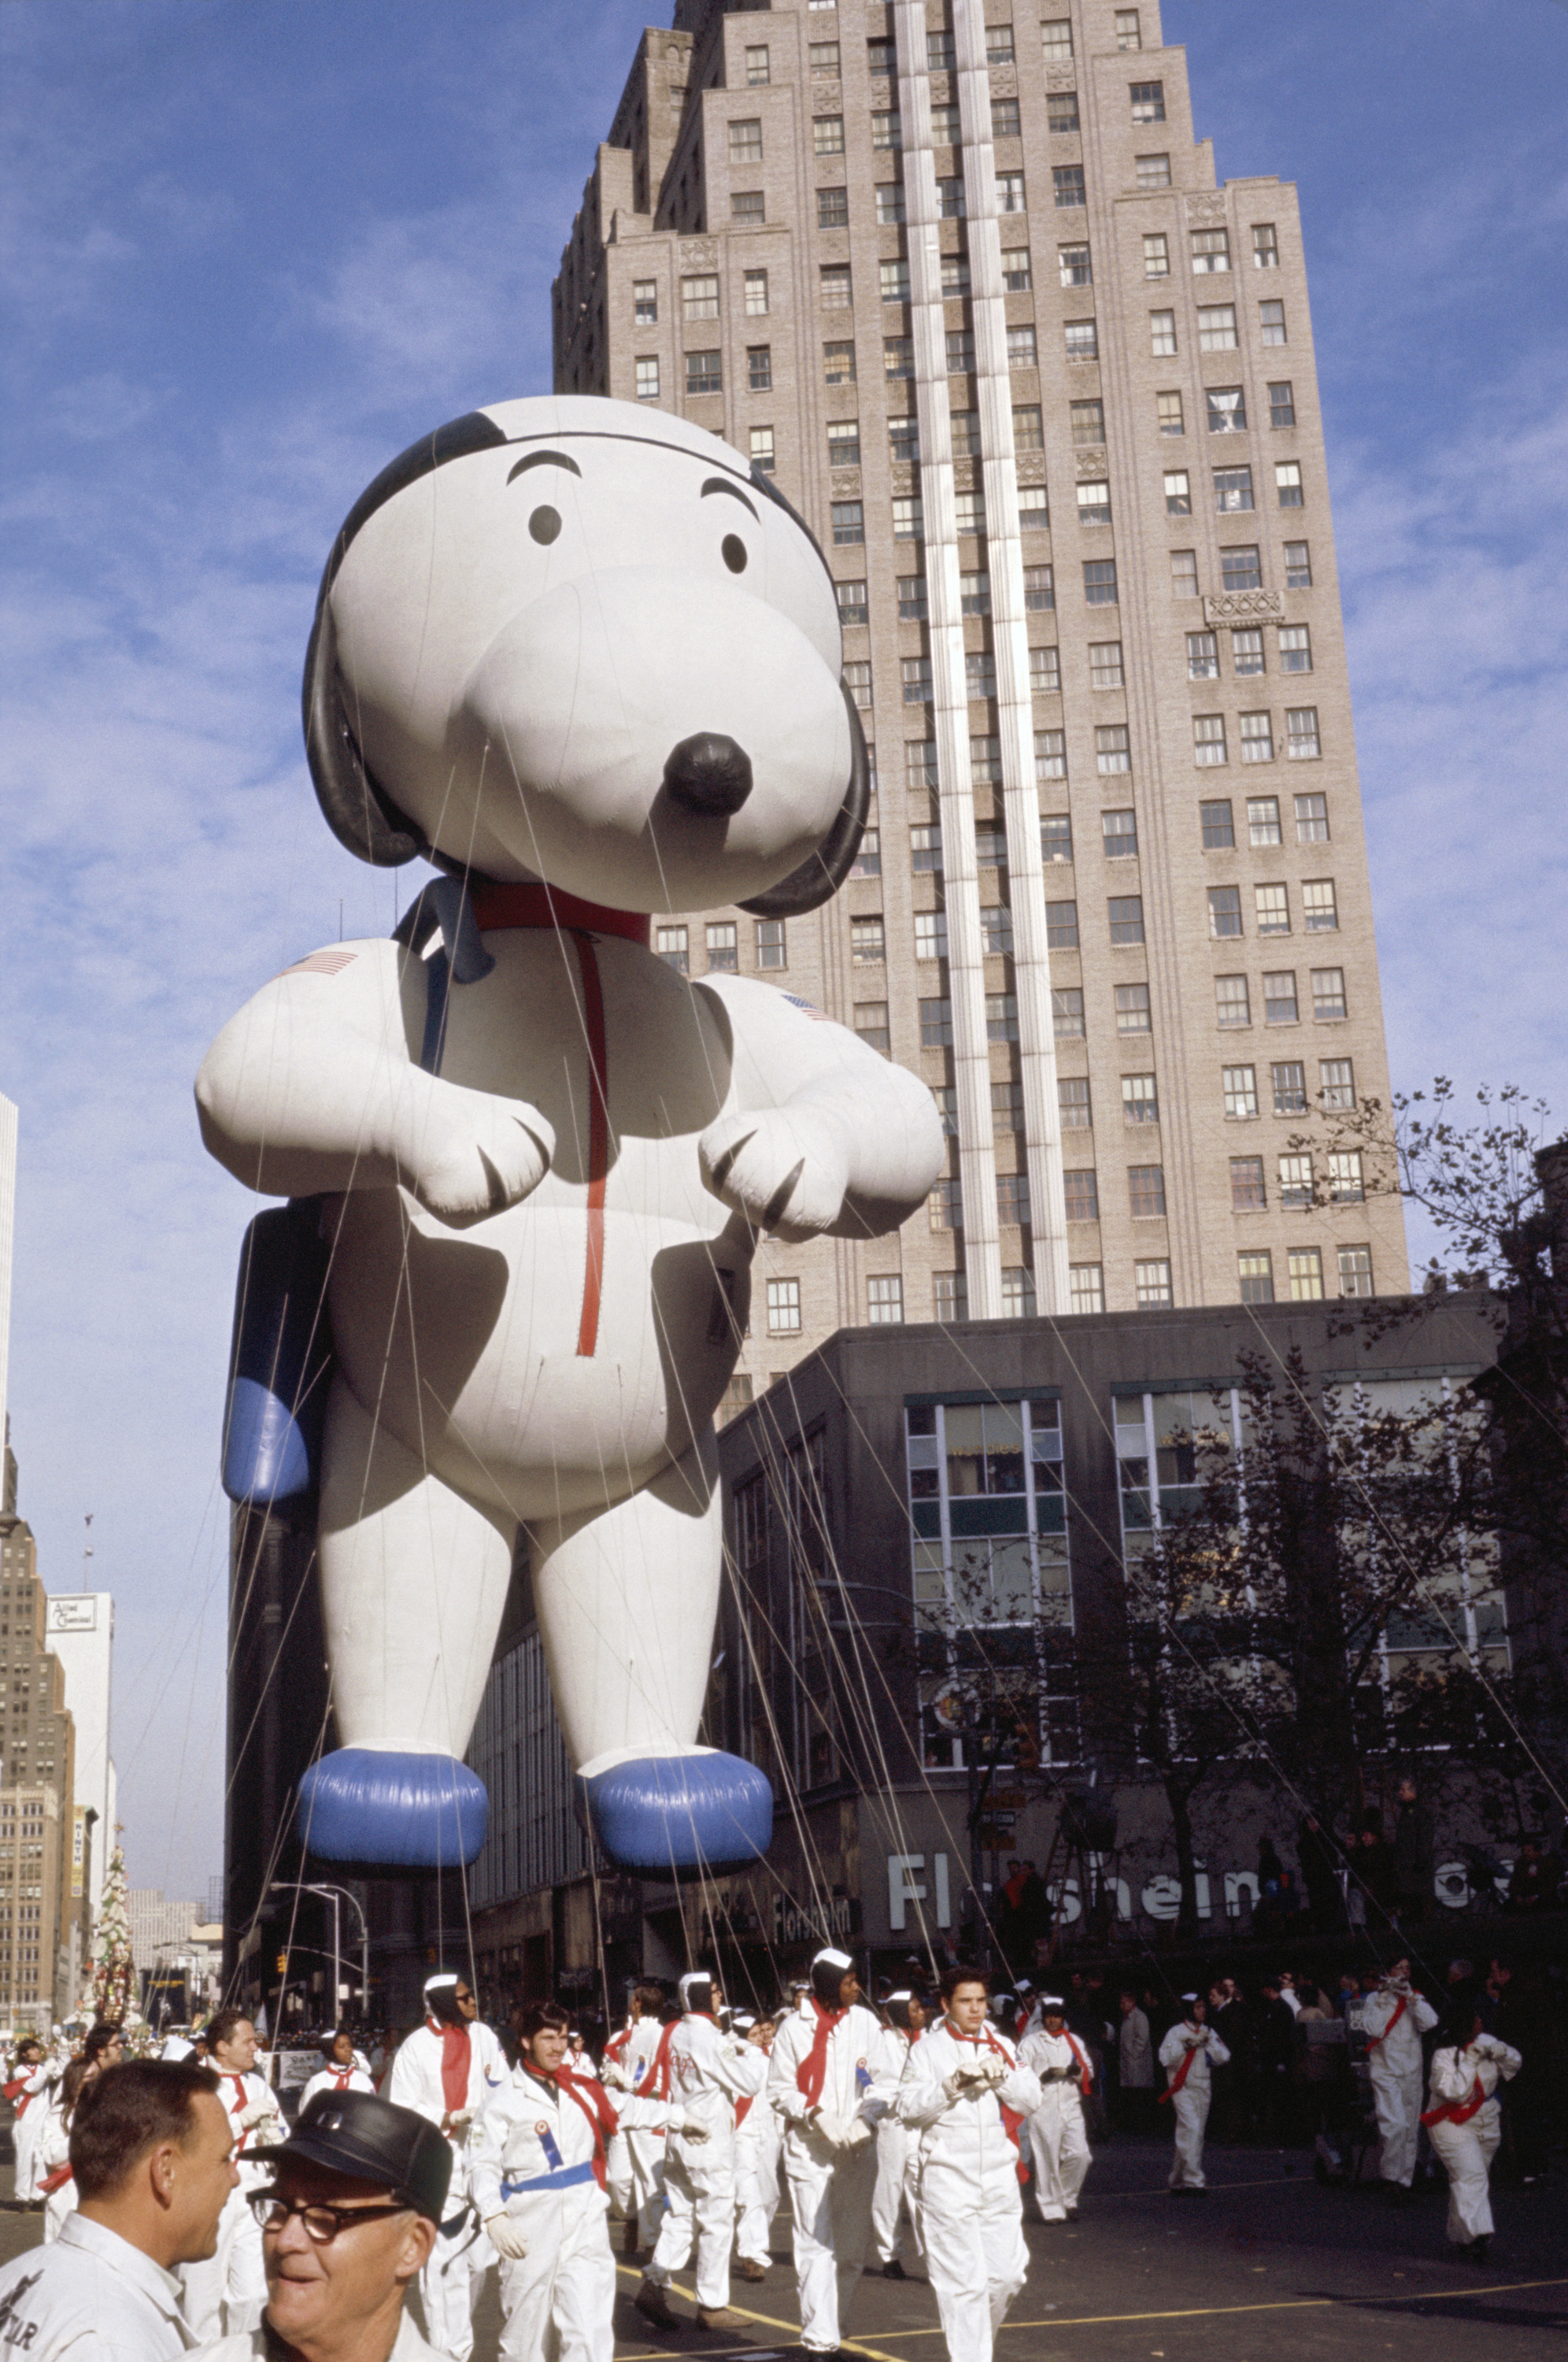 A Snoopy balloon